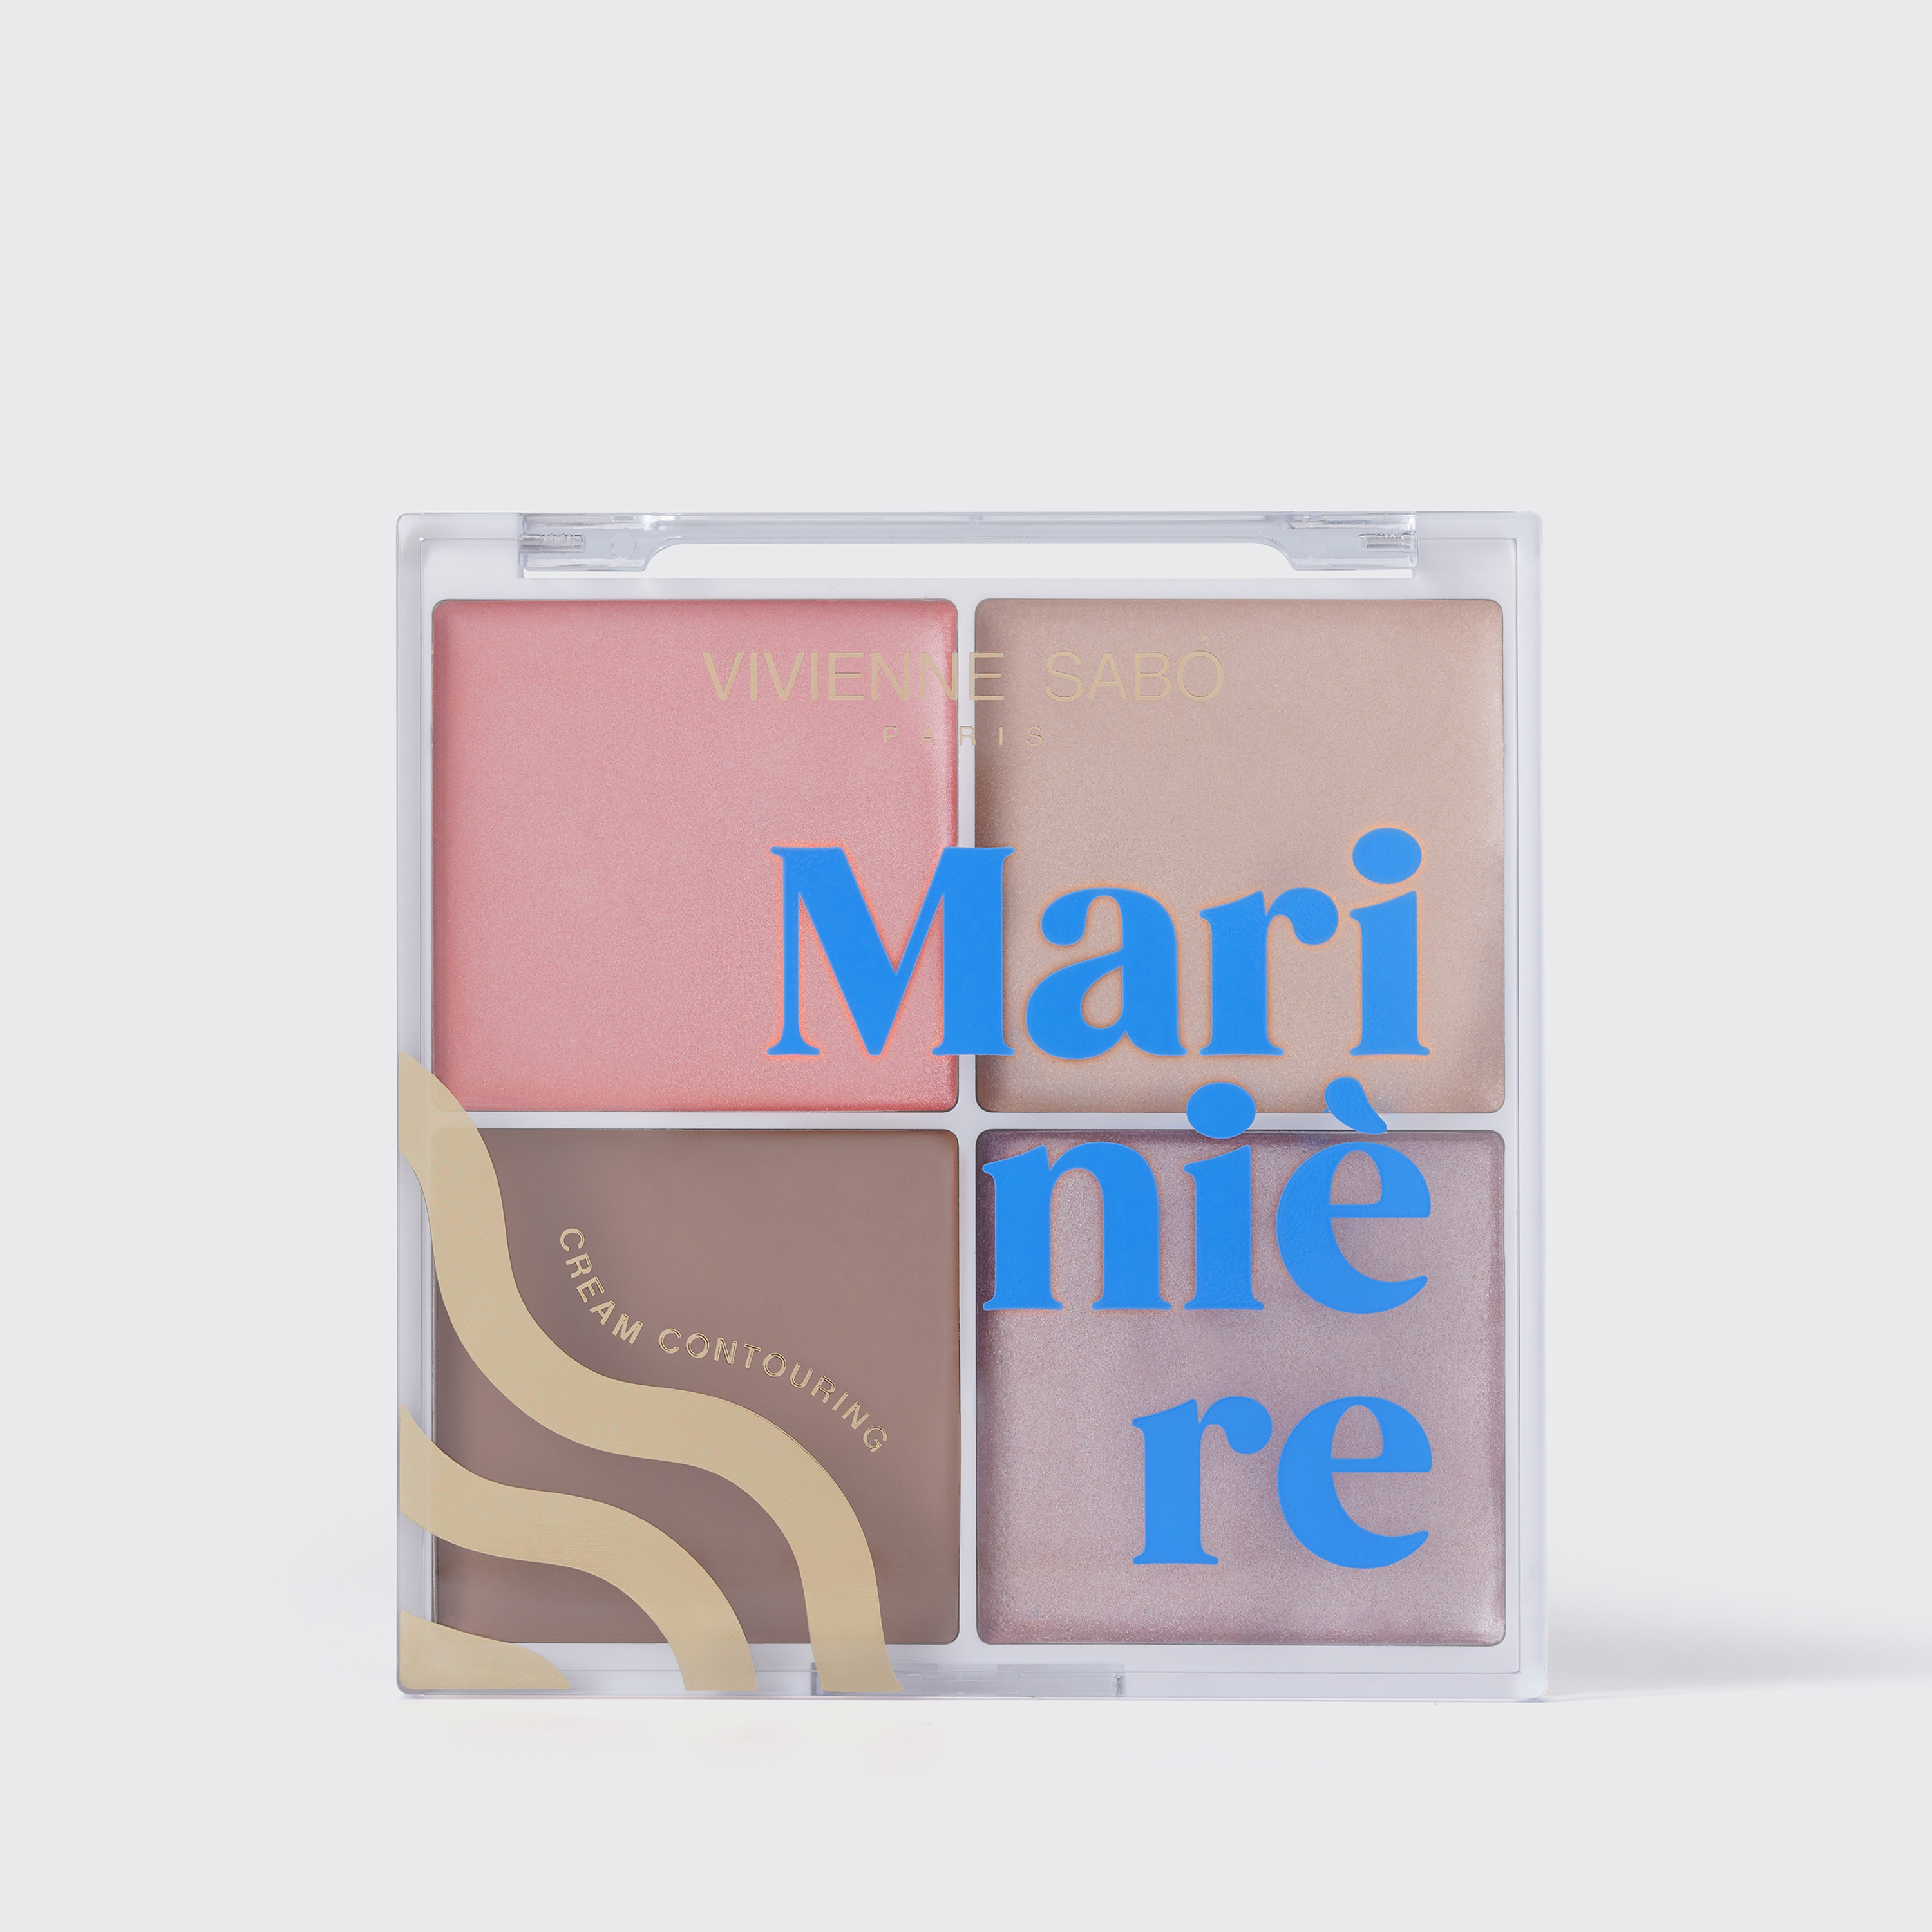 Vivienne Sabo - Cream  Face Contouring Palette - Marinière 02